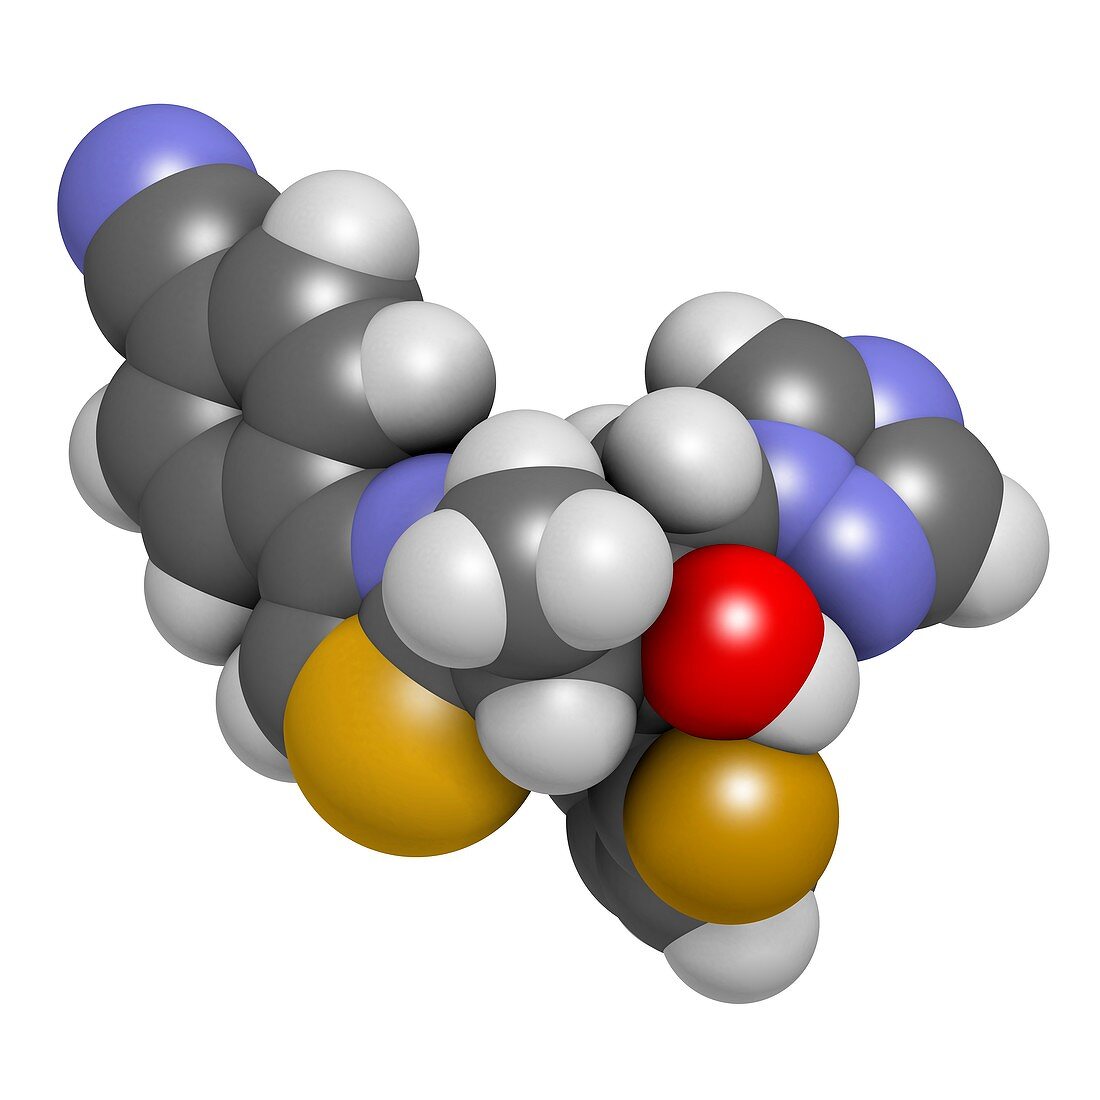 Isavuconazole triazole antifungal drug